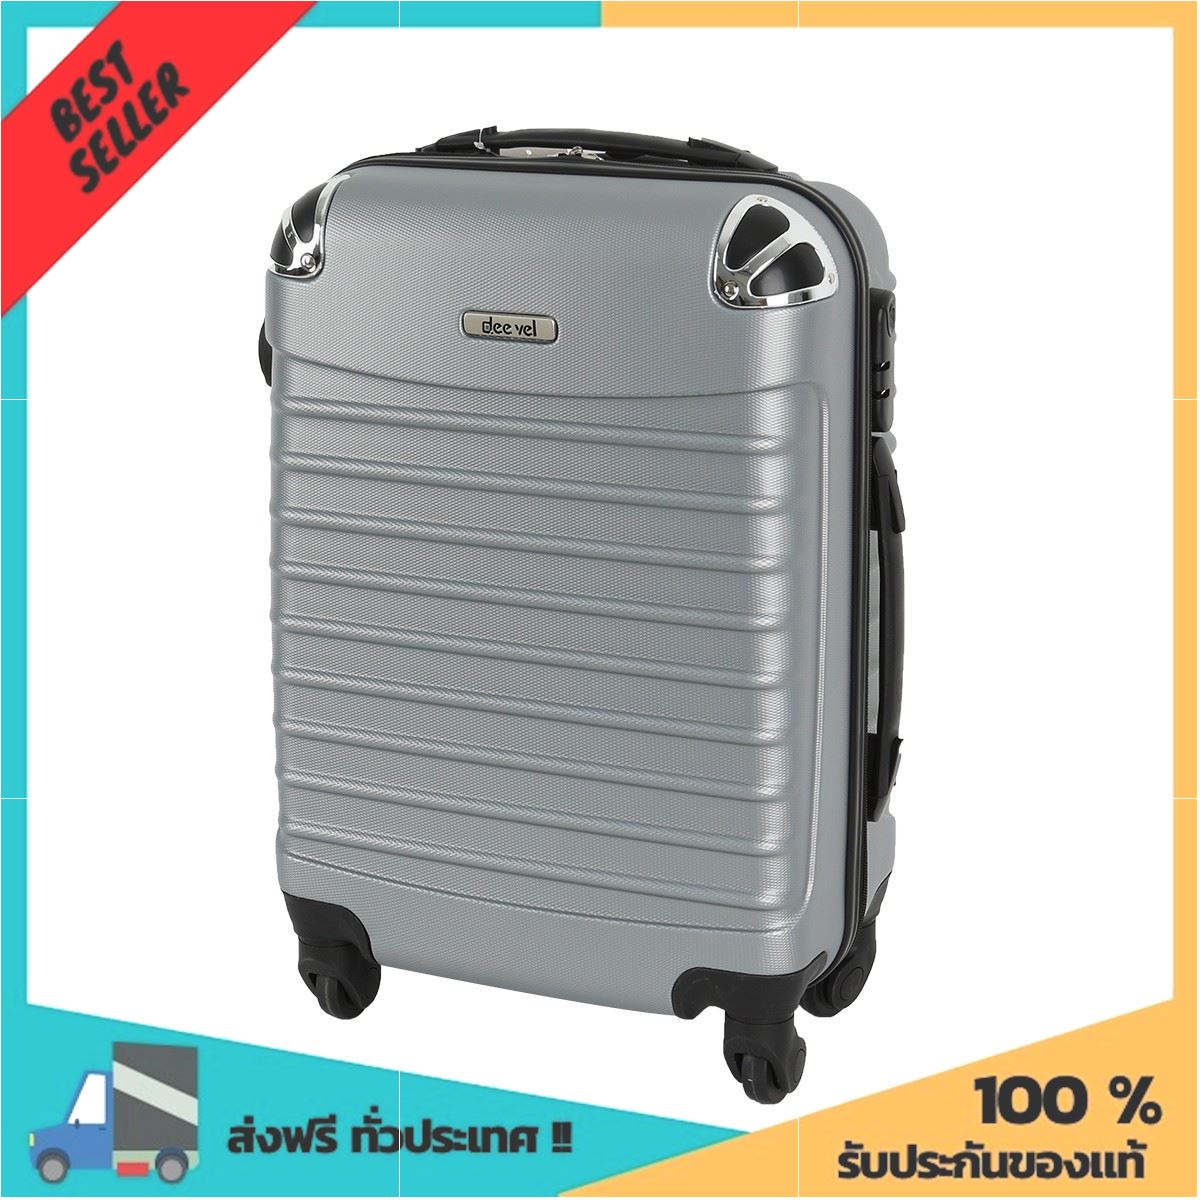 กระเป๋าเดินทางไฟเบอร์ ขนาด 20 นิ้ว รุ่น DM0045-1 สีเทา ฟรี ของแถม